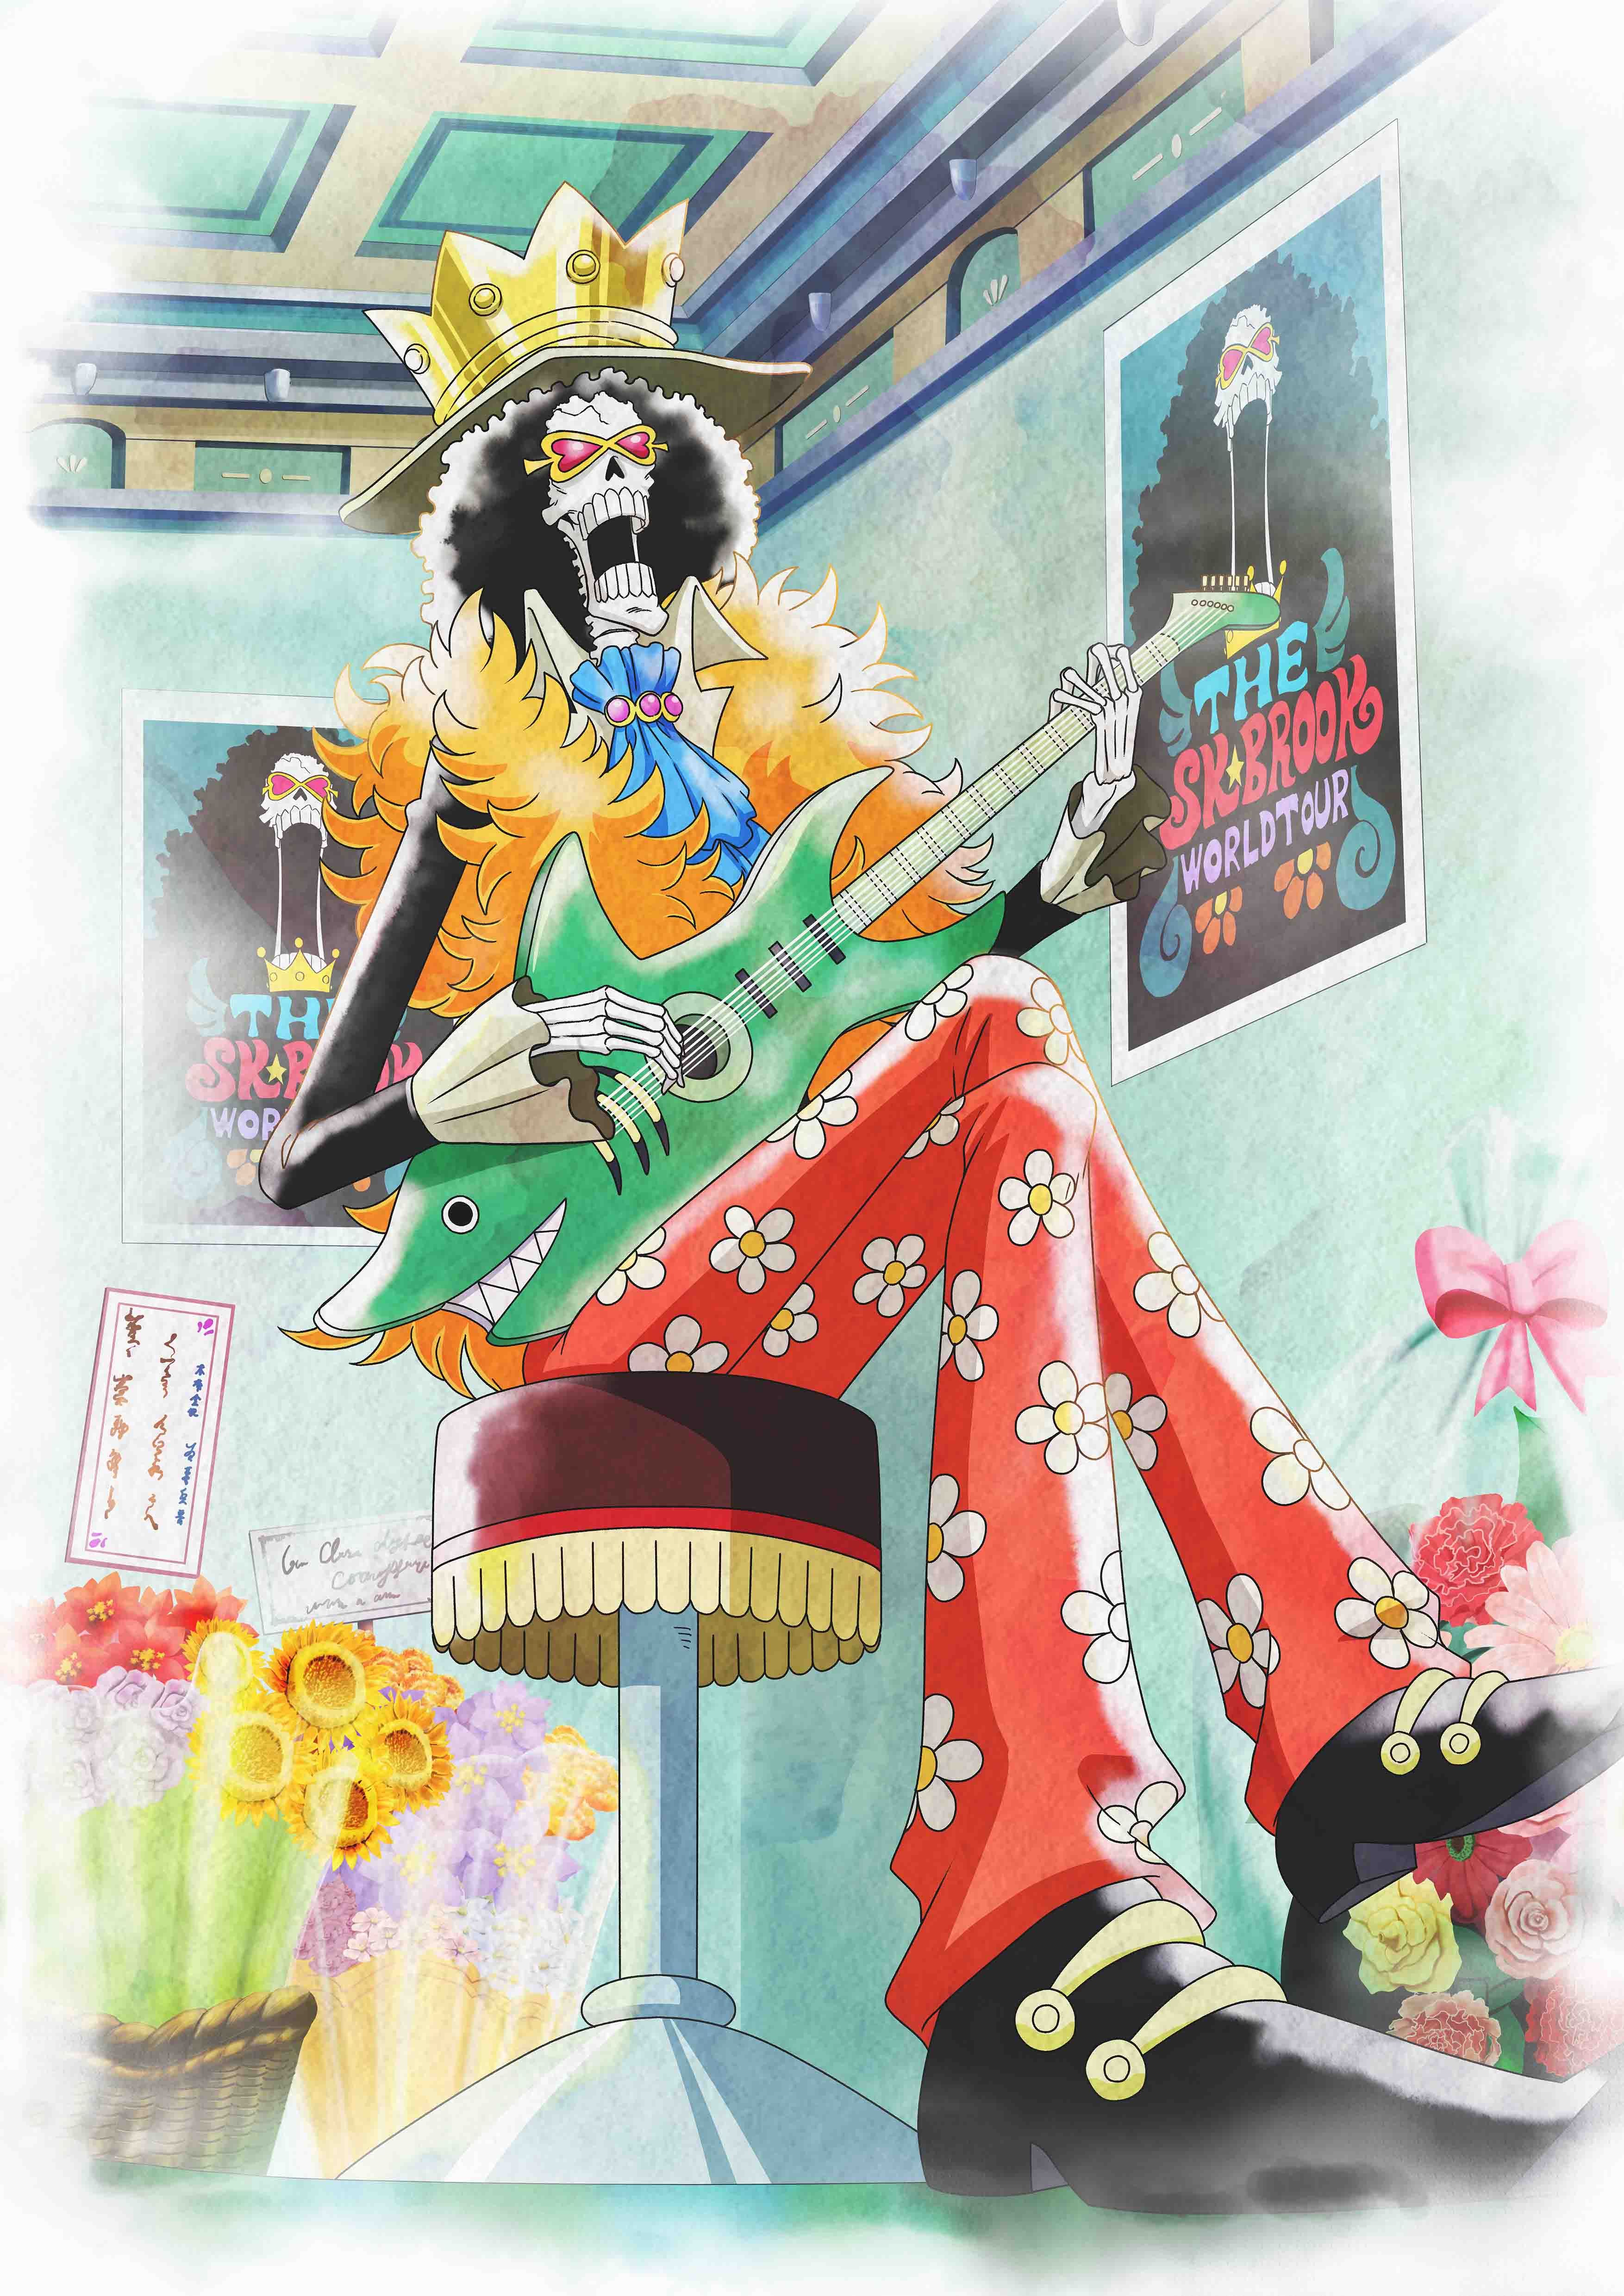 ЭКСКЛЮЗИВ: One Piece выпускает совершенно новую официальную иллюстрацию ко дню рождения Луффи